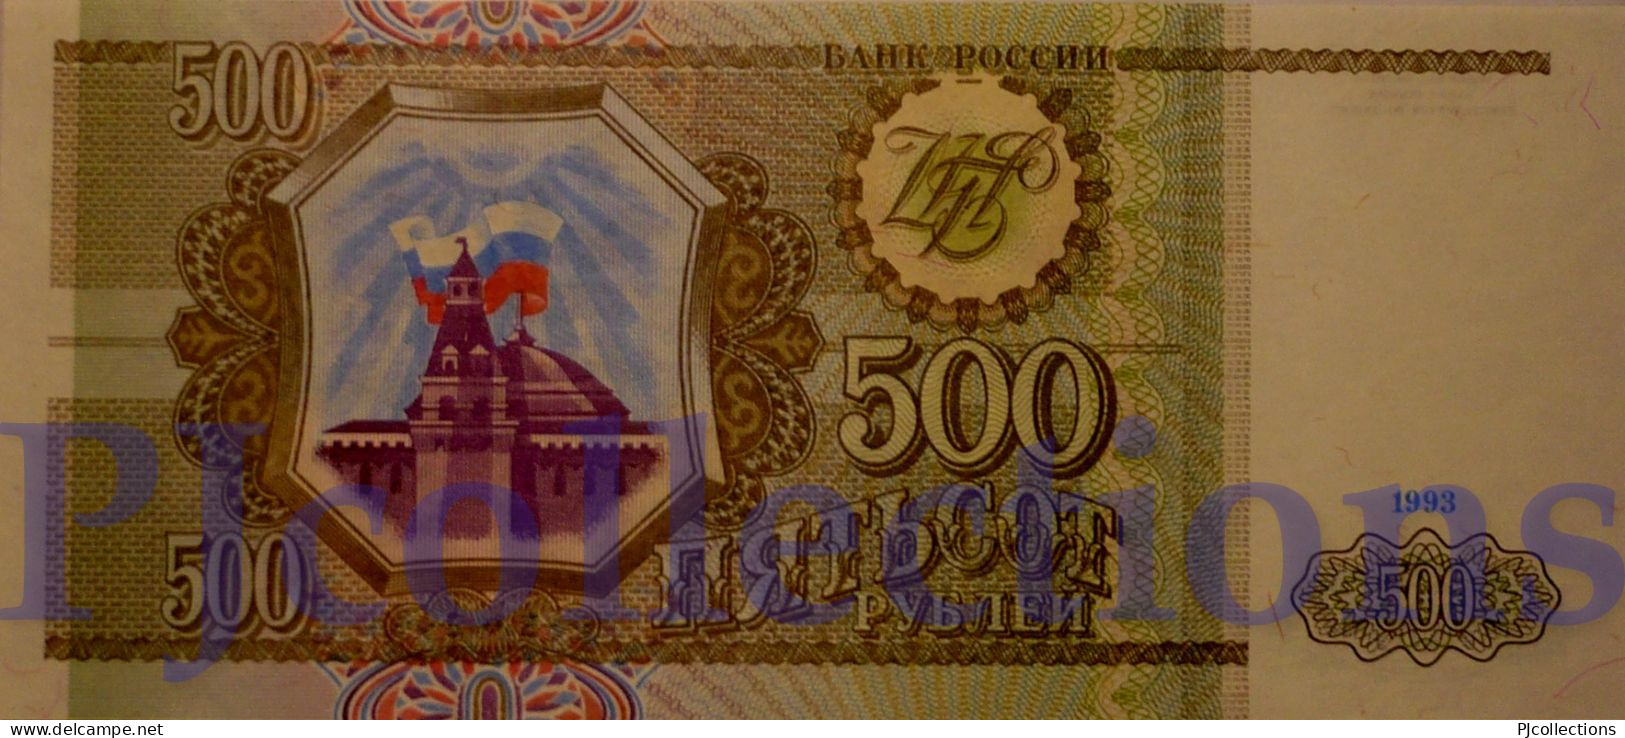 RUSSIA 500 RUBLES 1993 PICK 256 UNC - Russia